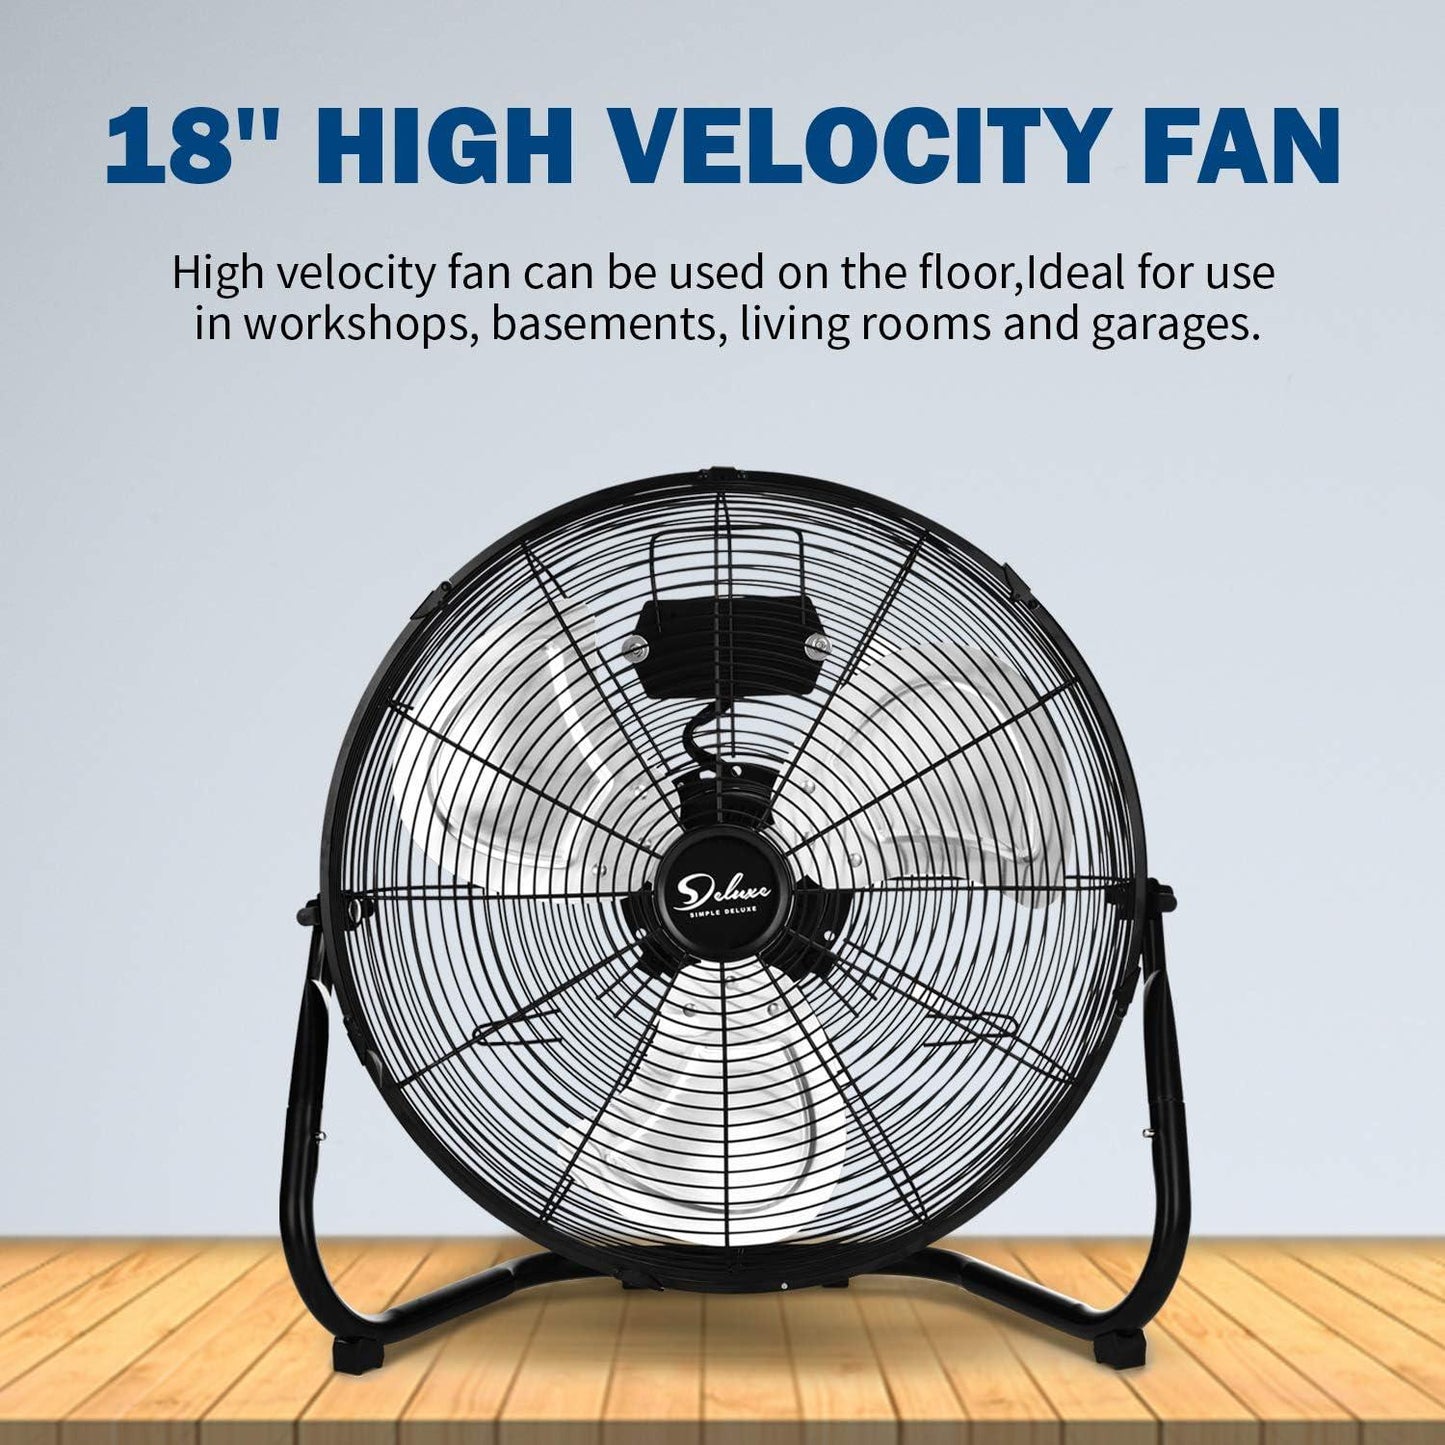 Deluxe 18 Inch 3-Speed High Velocity Heavy Duty Metal Industrial Floor Fans, Black